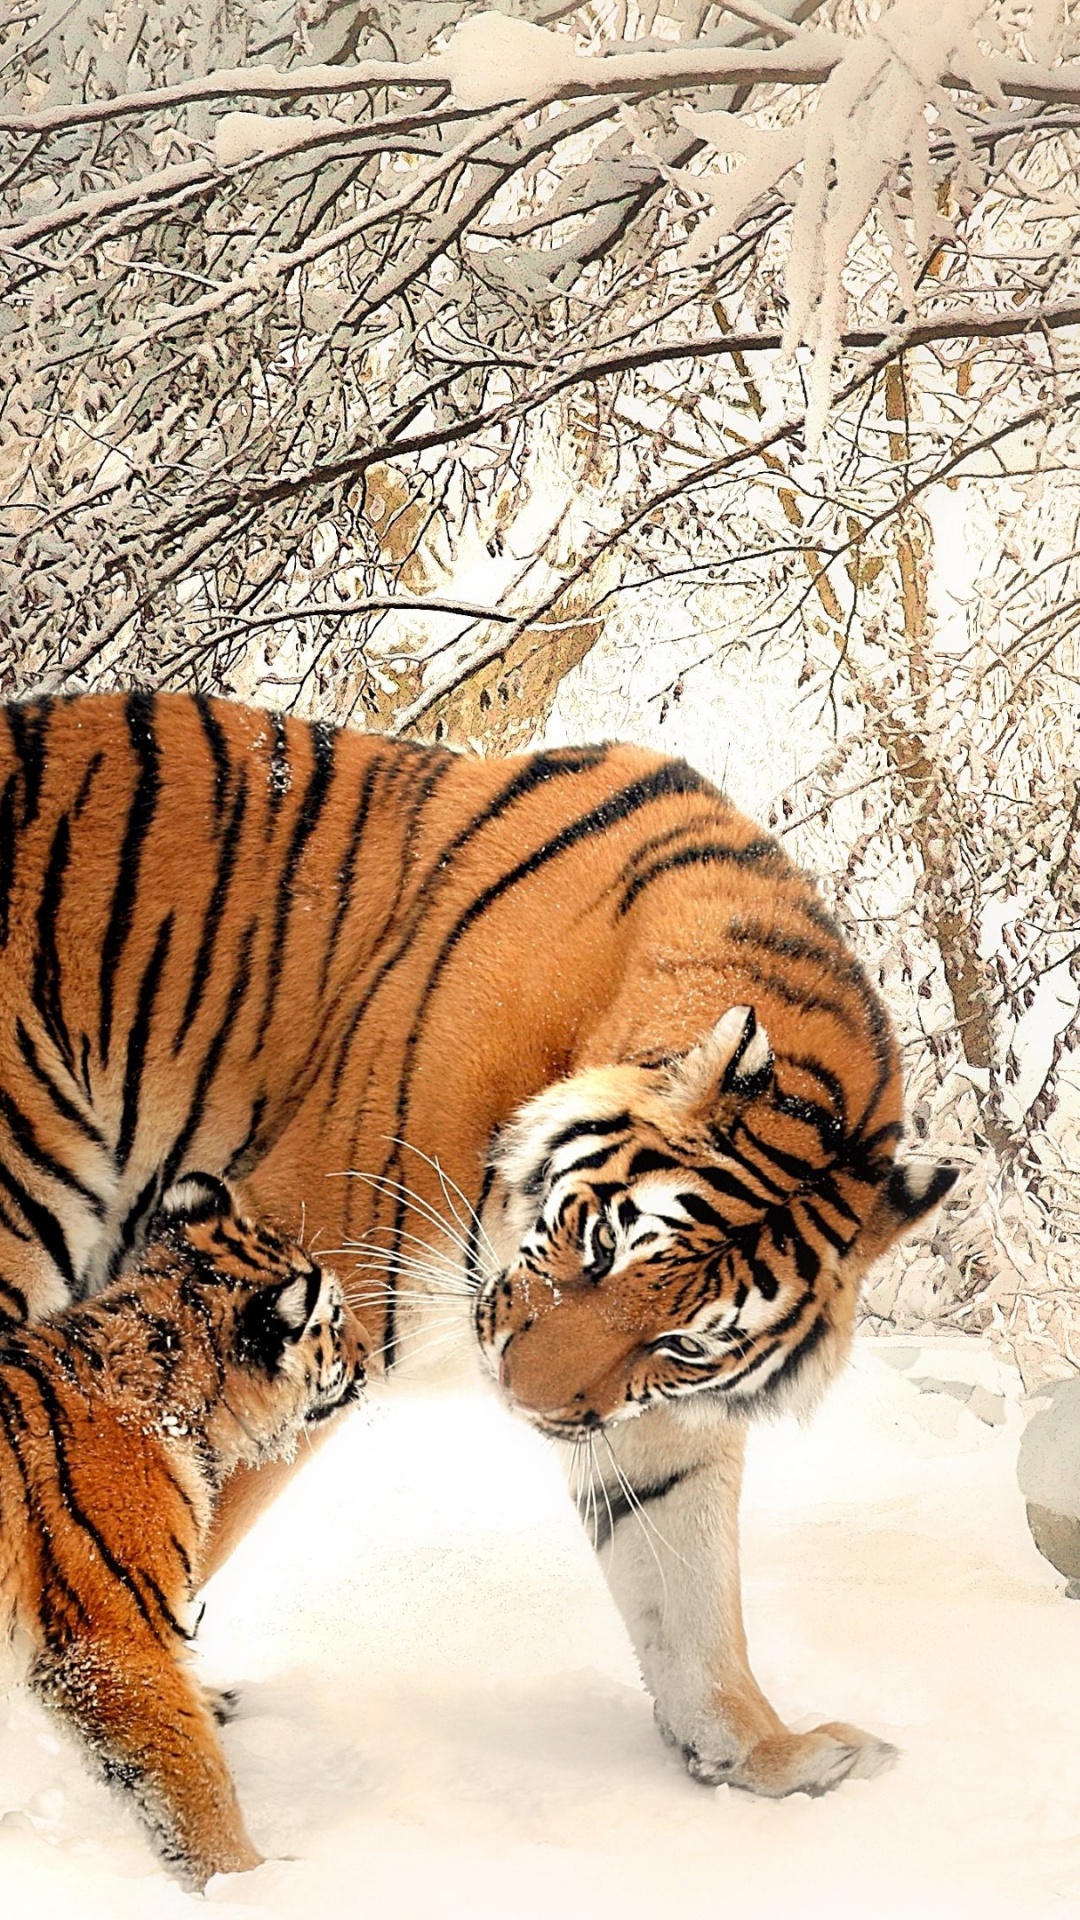 Tiger, Der Tagsüber Auf Schneebedecktem Boden Läuft. Wallpaper in 1080x1920 Resolution